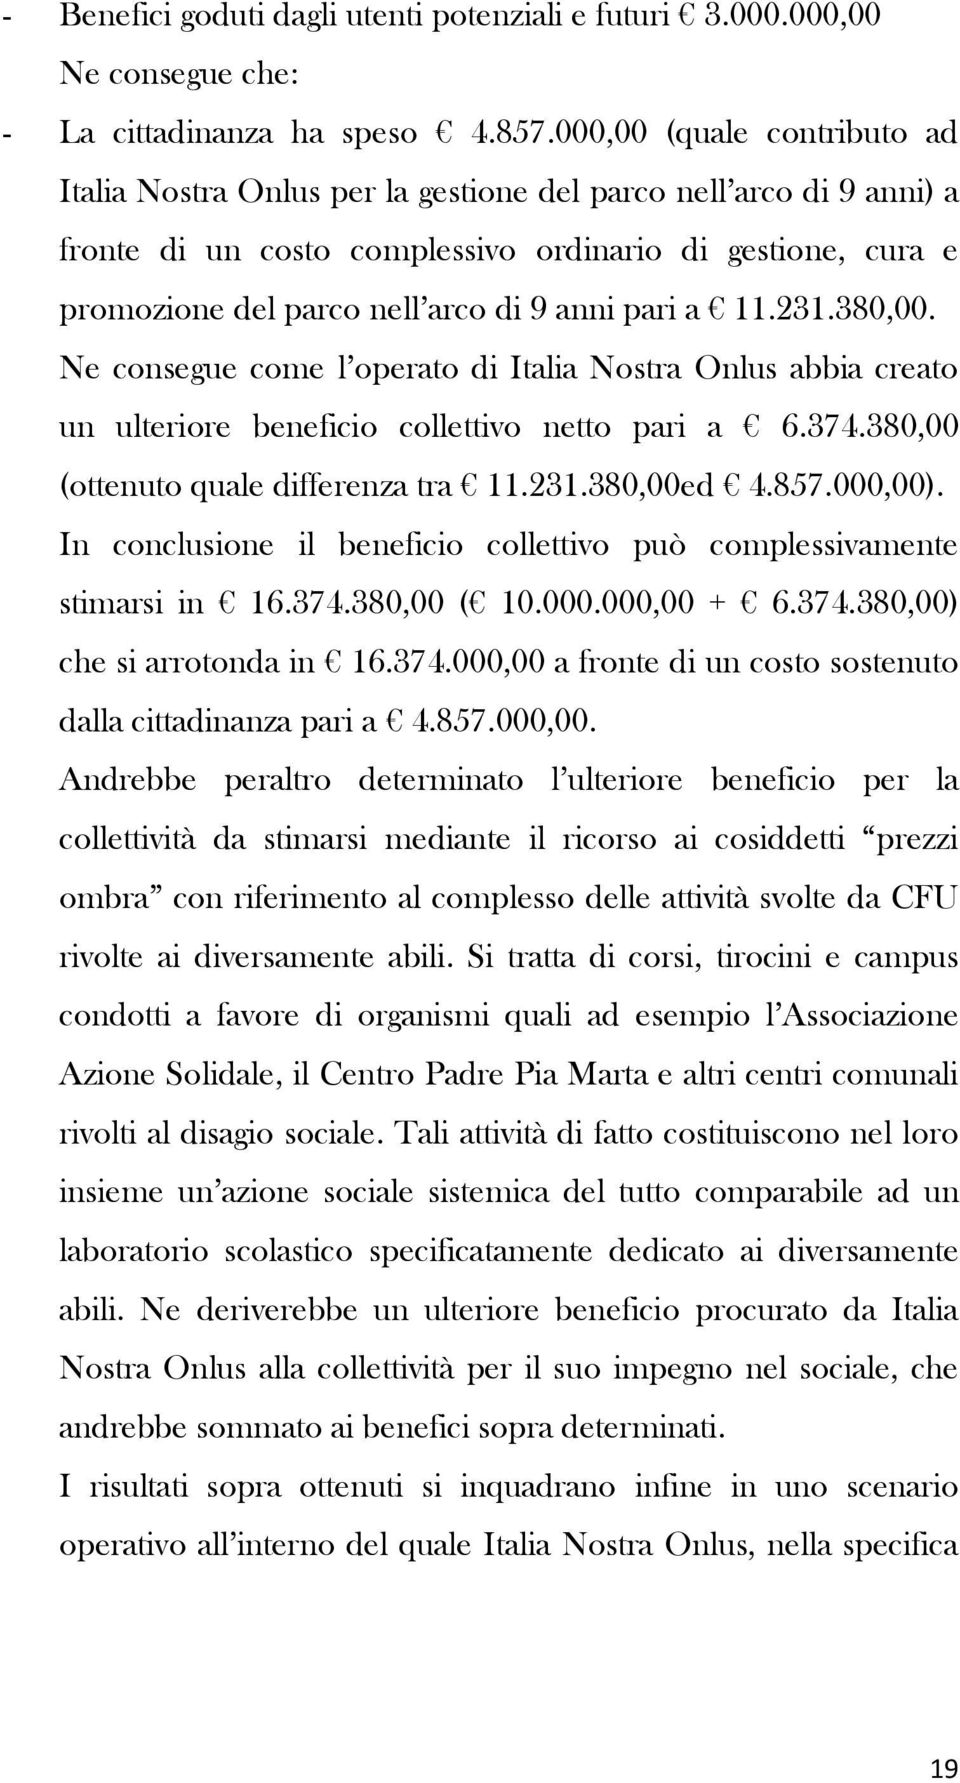 pari a 11.231.380,00. Ne consegue come l operato di Italia Nostra Onlus abbia creato un ulteriore beneficio collettivo netto pari a 6.374.380,00 (ottenuto quale differenza tra 11.231.380,00ed 4.857.